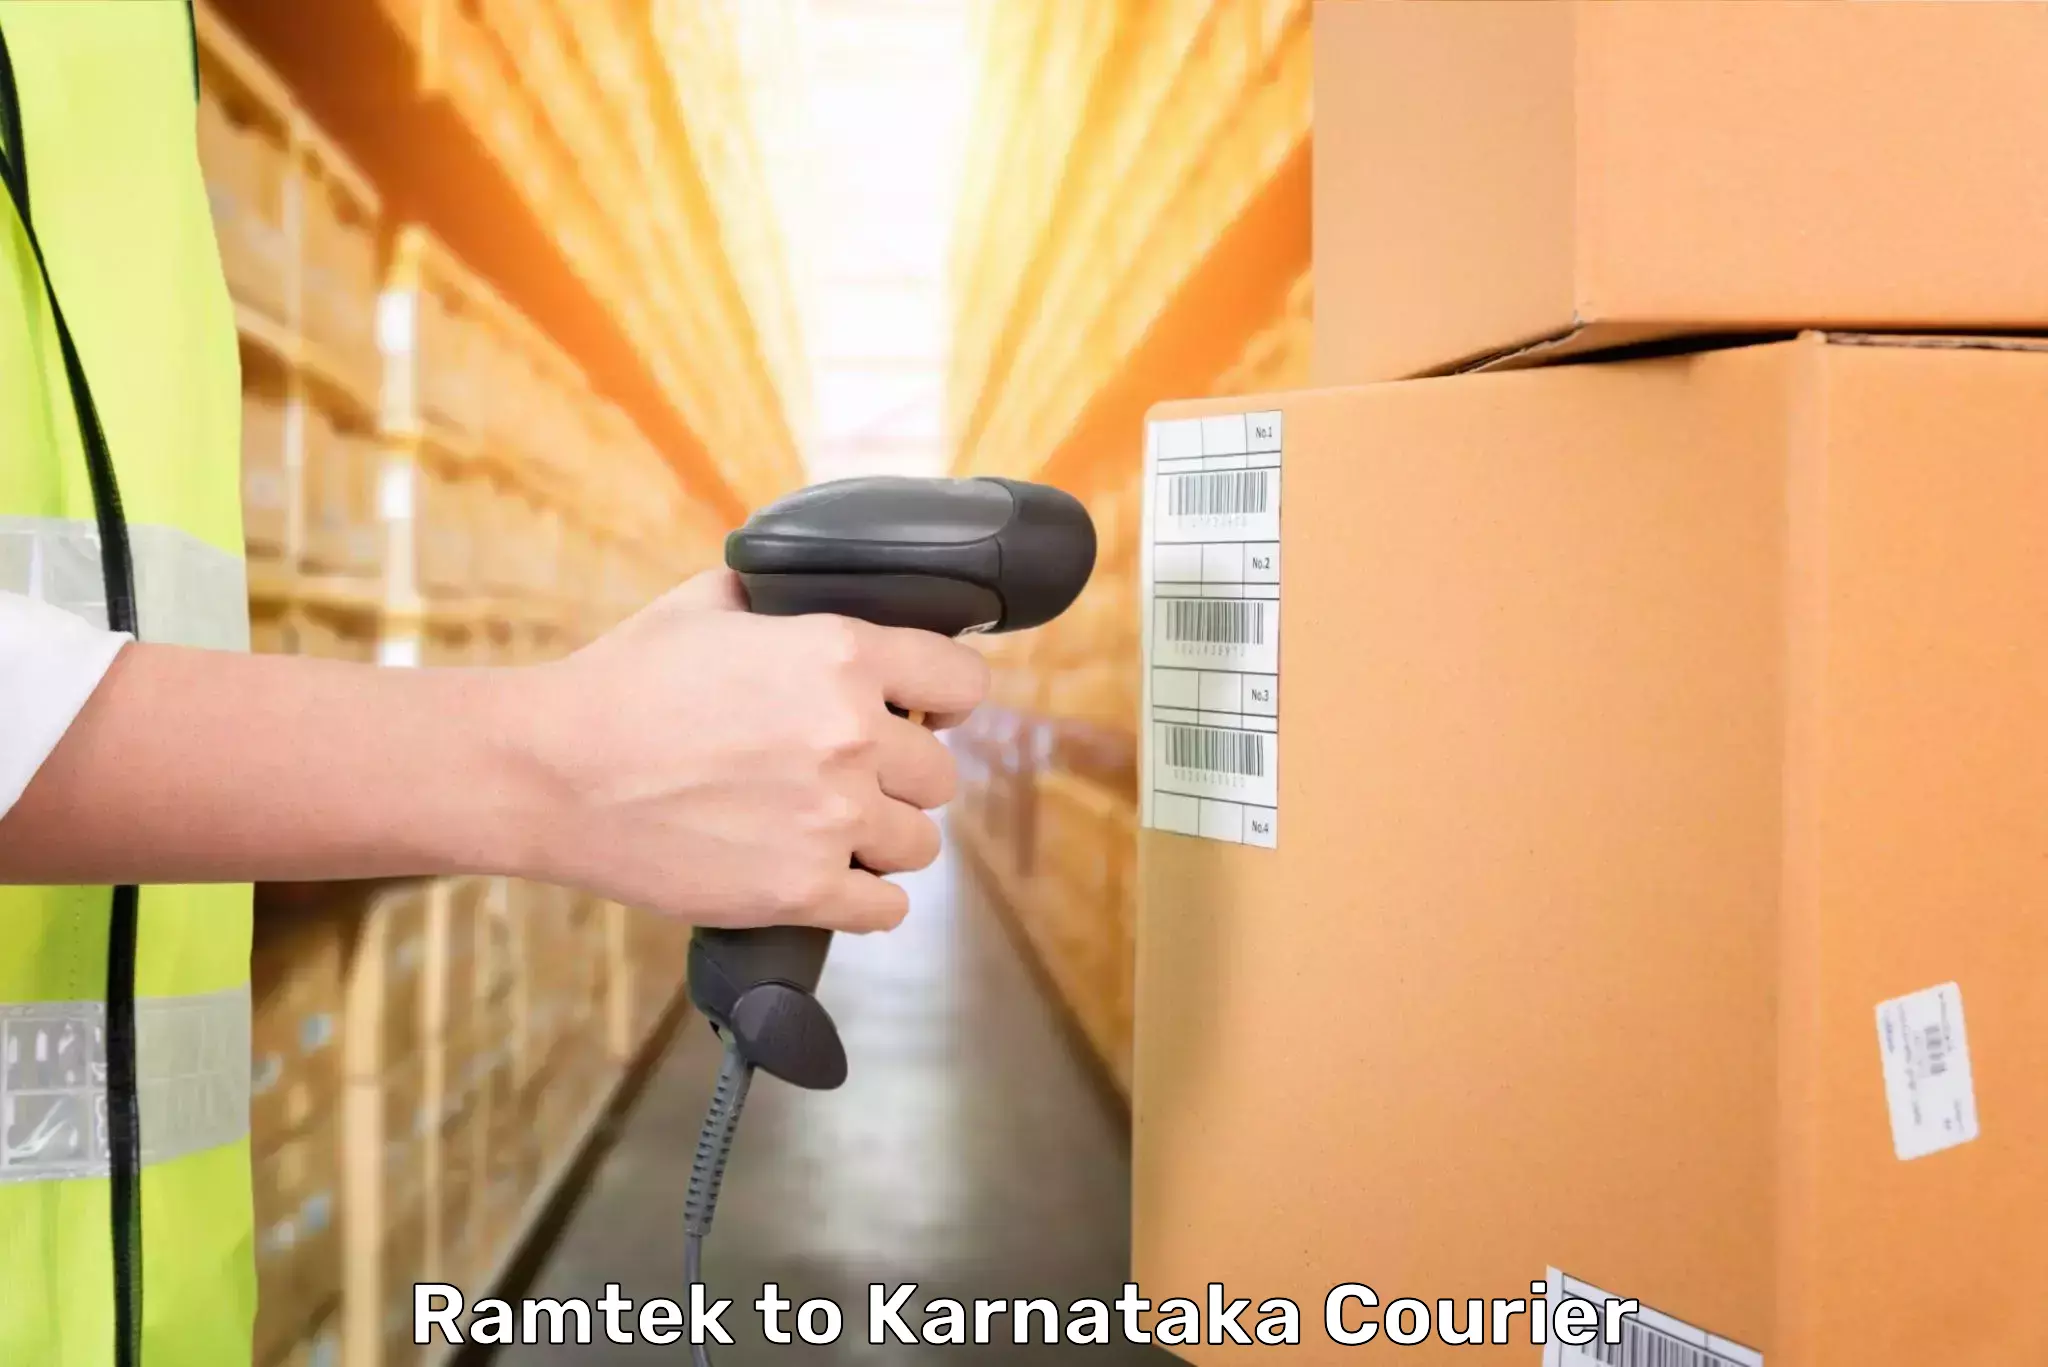 Emergency baggage service Ramtek to Karnataka